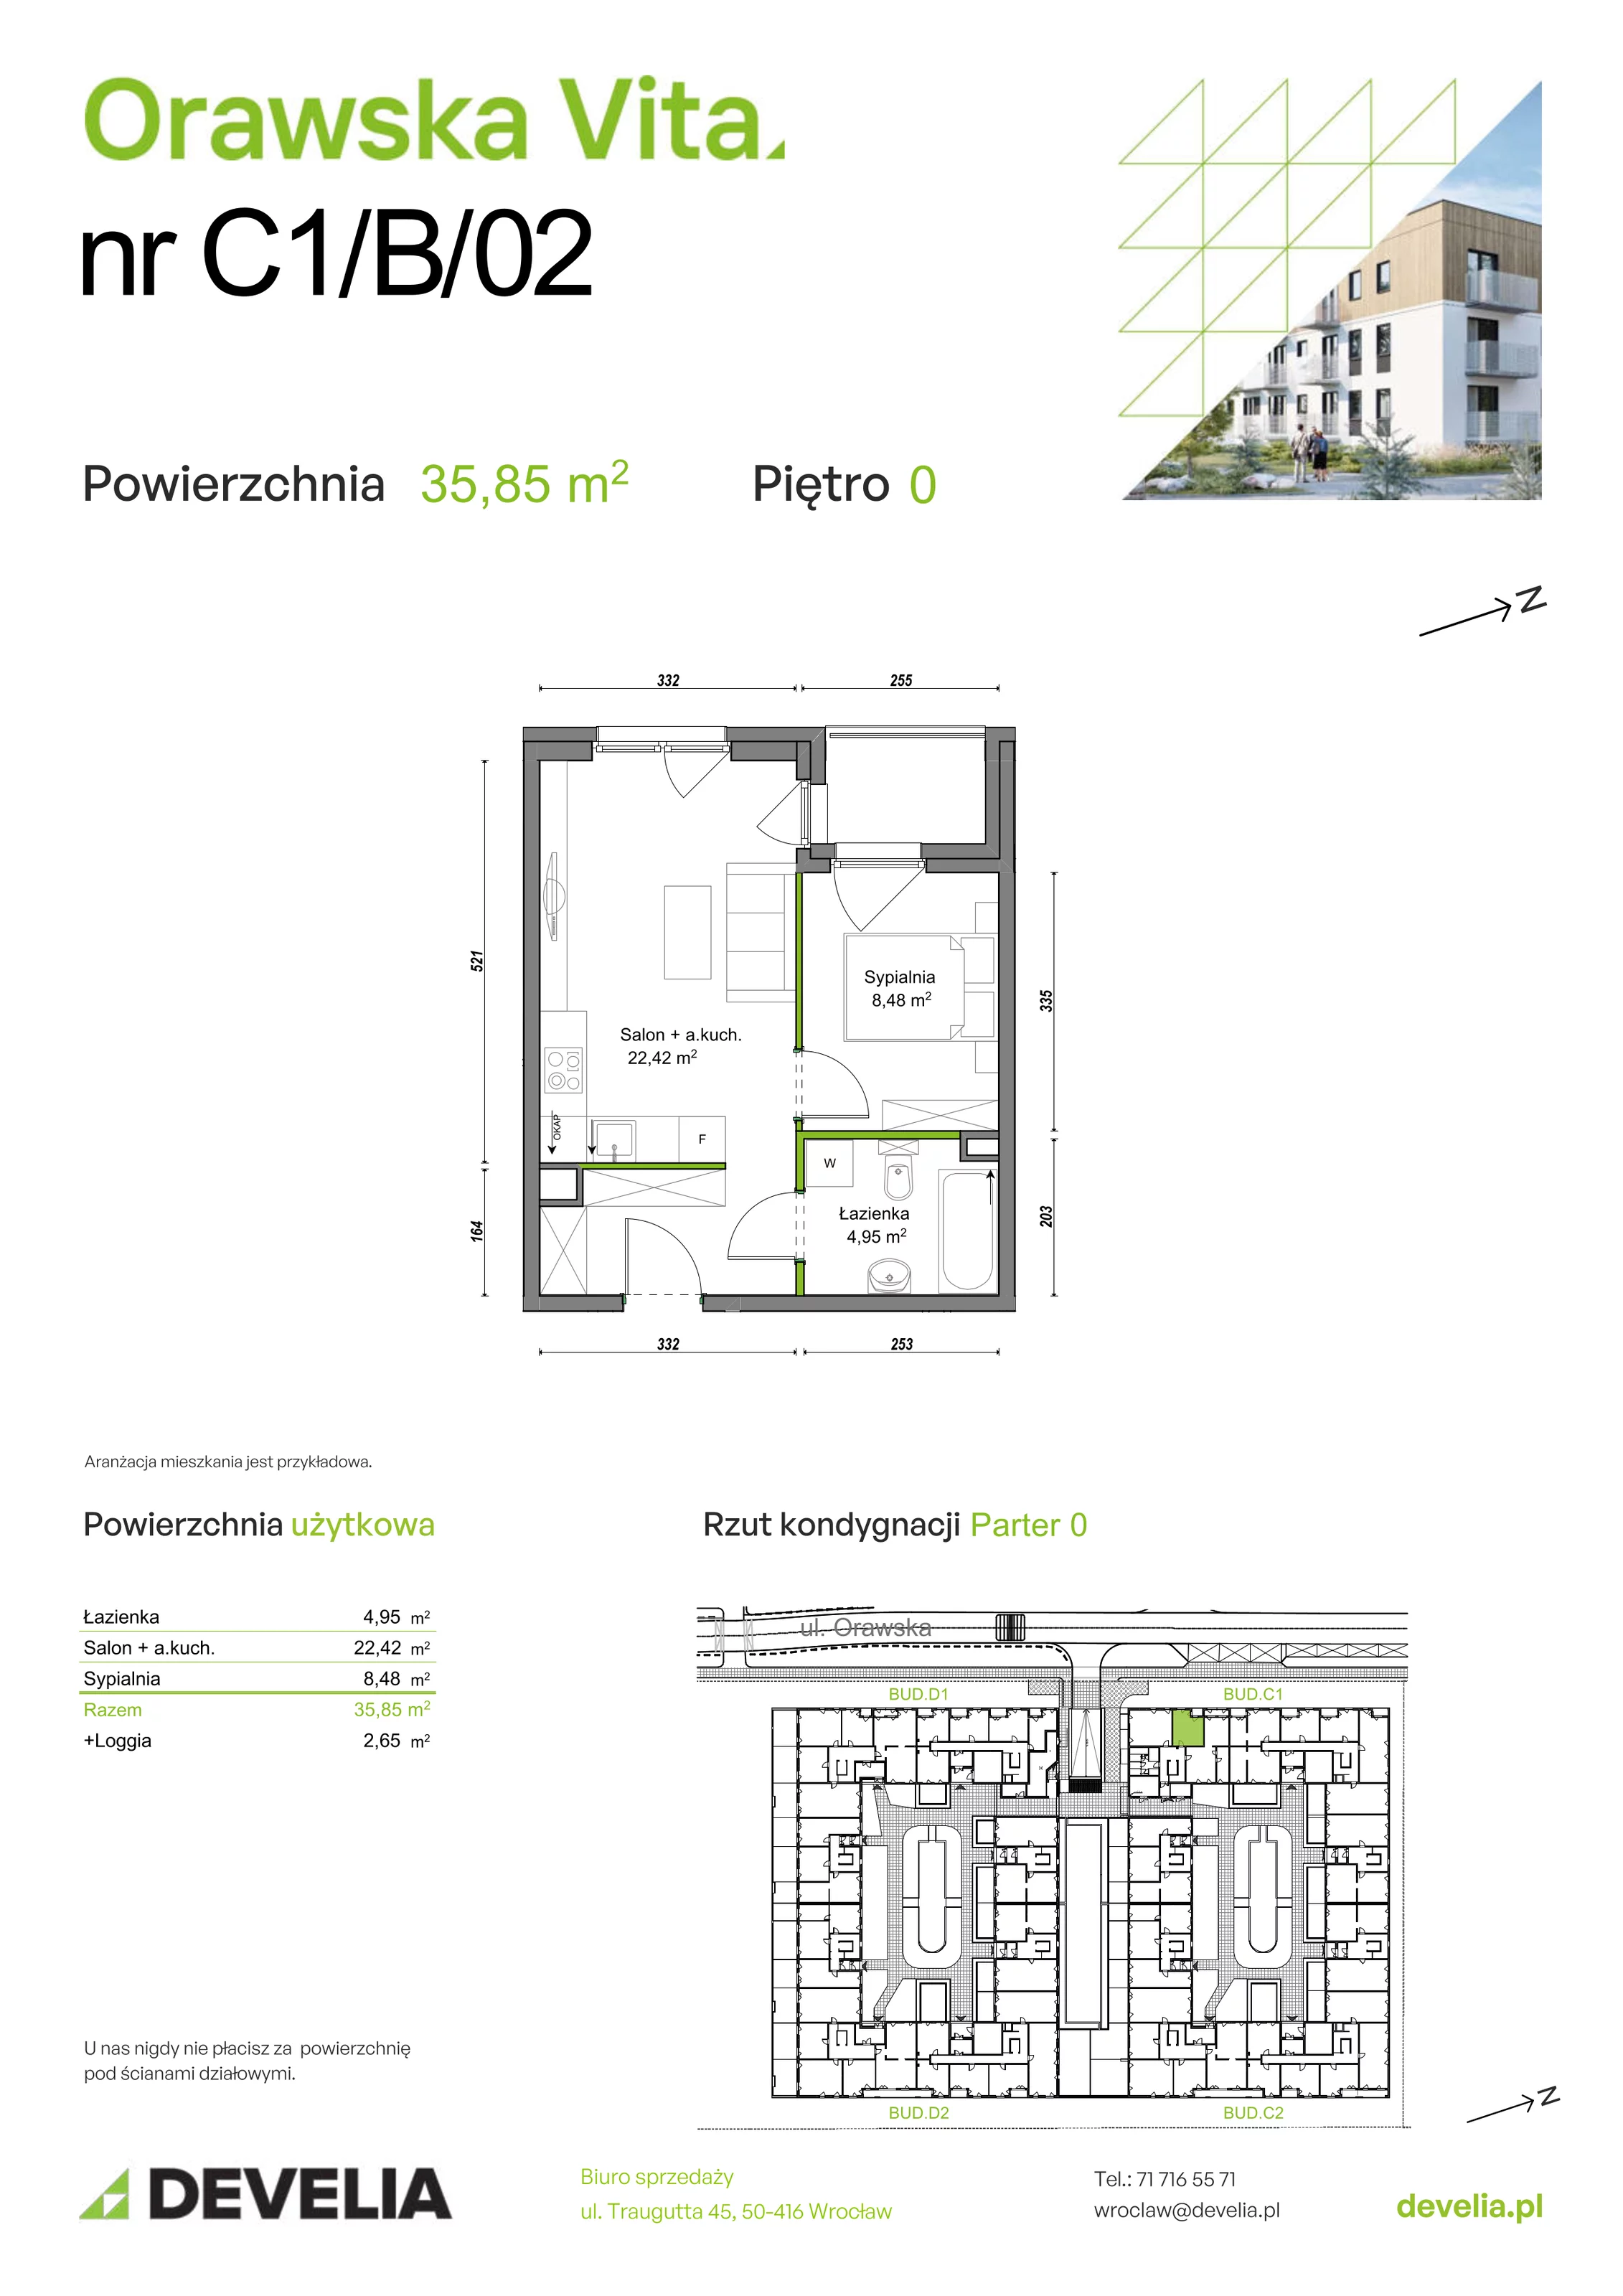 Mieszkanie 35,85 m², parter, oferta nr C1/B/02, Orawska Vita, Wrocław, Ołtaszyn, Krzyki, ul. Orawska 73